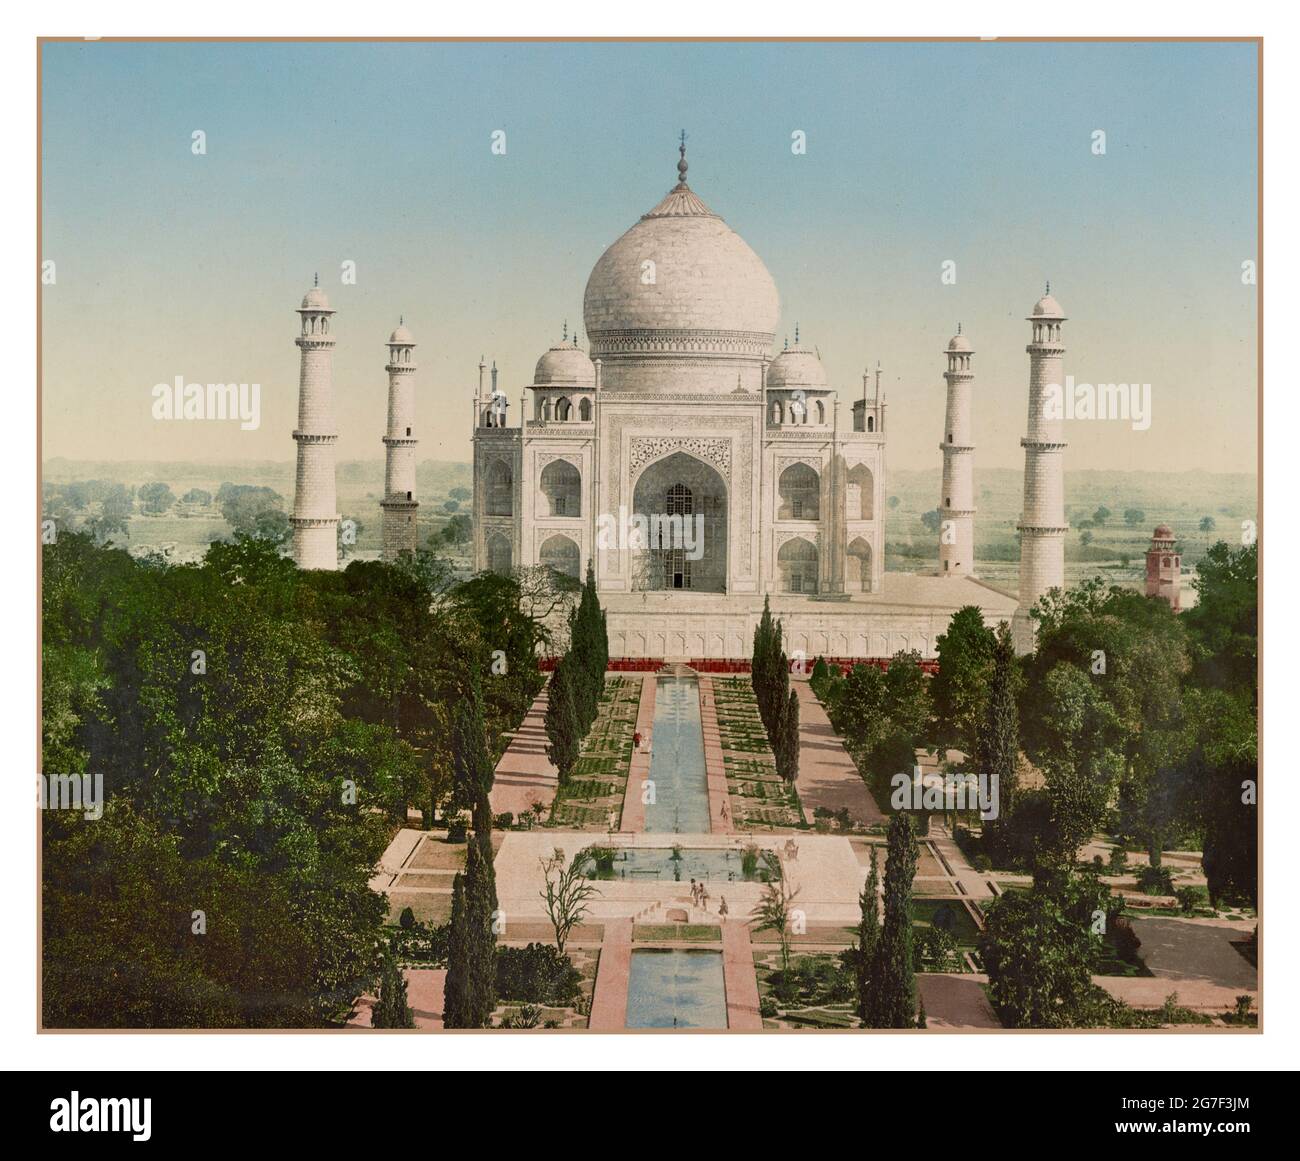 Das Taj Mahal 'Krone des Palastes', Archiv 1900 Photochrom eines elfenbeinweißen Marmor-Mausoleums am südlichen Ufer des Flusses Yamuna in der indischen Stadt Agra. Es wurde 1632 vom Moghul-Kaiser Shah Jahan (regierte von 1628 bis 1658) beauftragt, das Grab seiner Lieblingsfrau, Mumtaz Mahal, zu beherbergen; es beherbergt auch das Grab von Shah Jahan selbst. Das Grab ist das Herzstück eines 17 Hektar großen (42 Hektar) großen Komplexes, der eine Moschee und ein Gästehaus umfasst, und liegt in einem formellen Garten, der von einer zinnenverzierten Mauer begrenzt wird. Das Taj Mahal wurde 1983 zum UNESCO-Weltkulturerbe ernannt Stockfoto